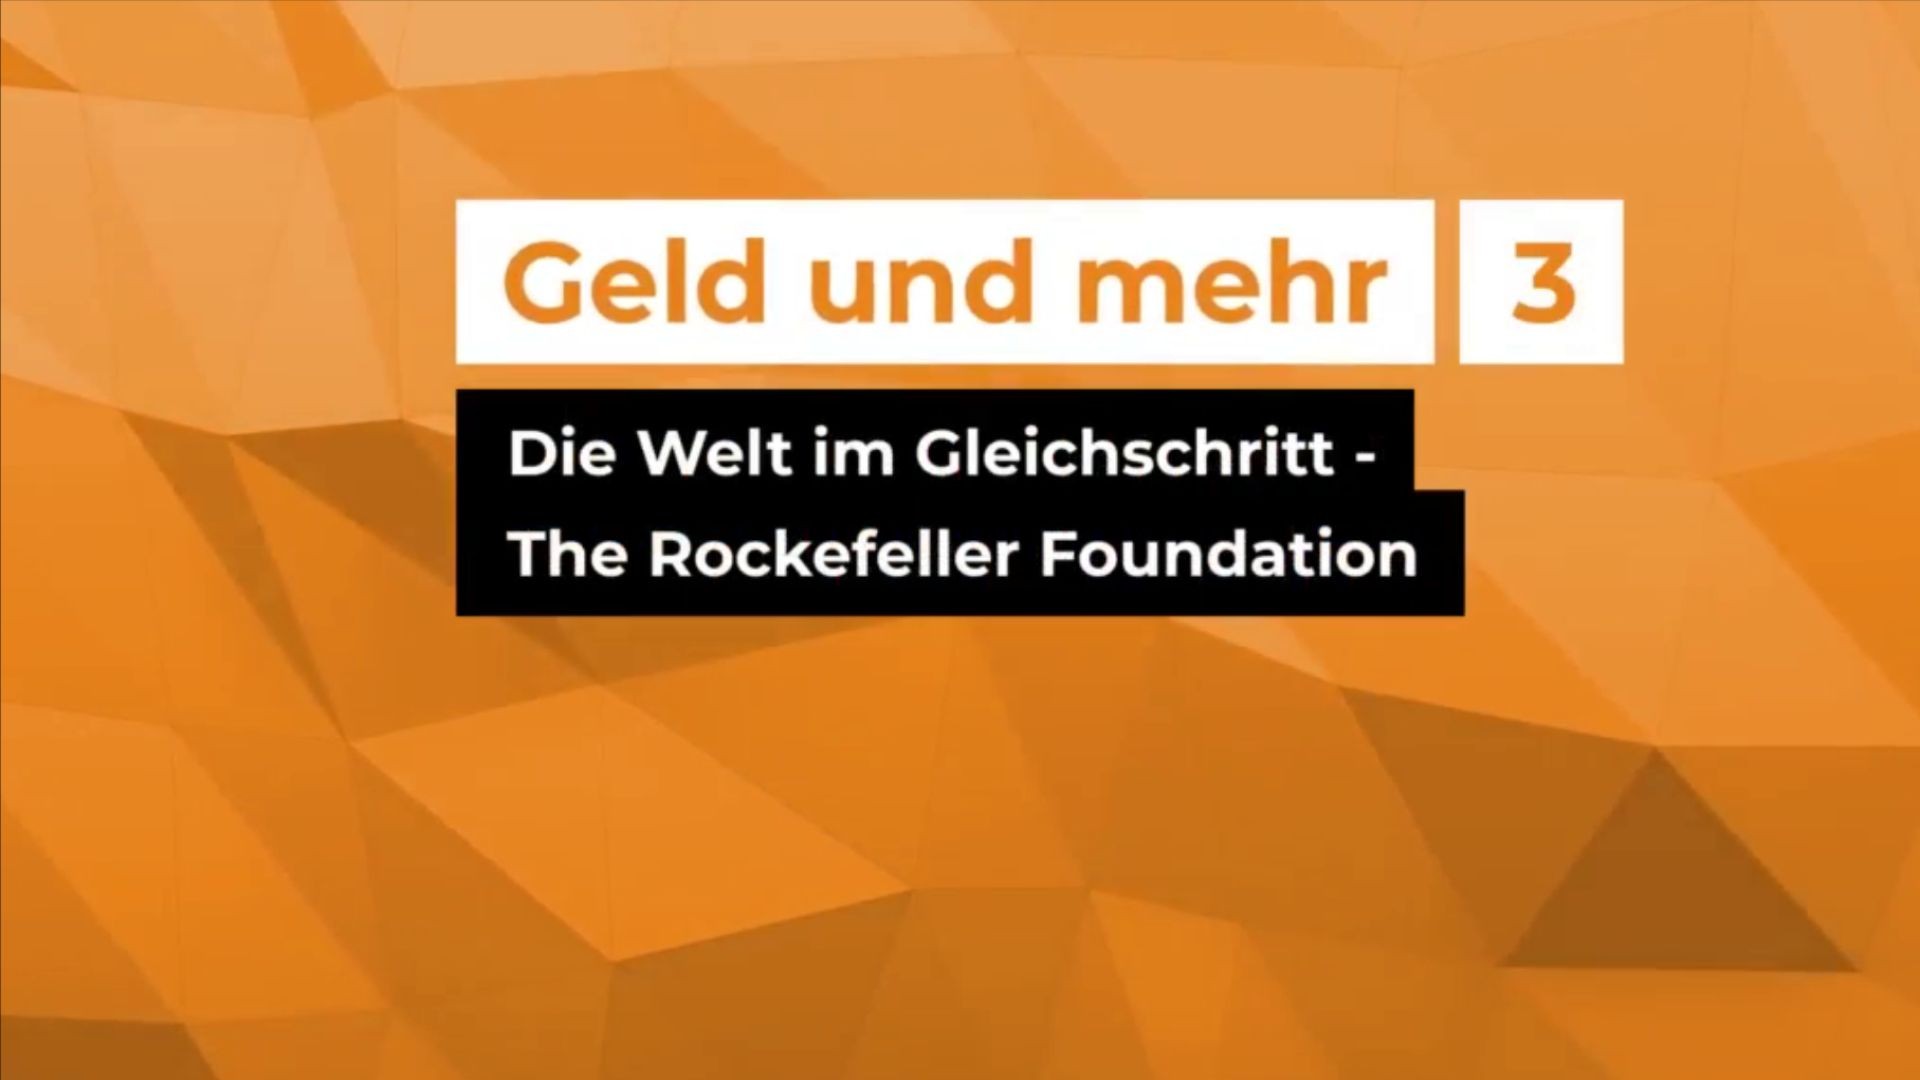 Die Welt im Gleichschritt - The Rockefeller Foundation